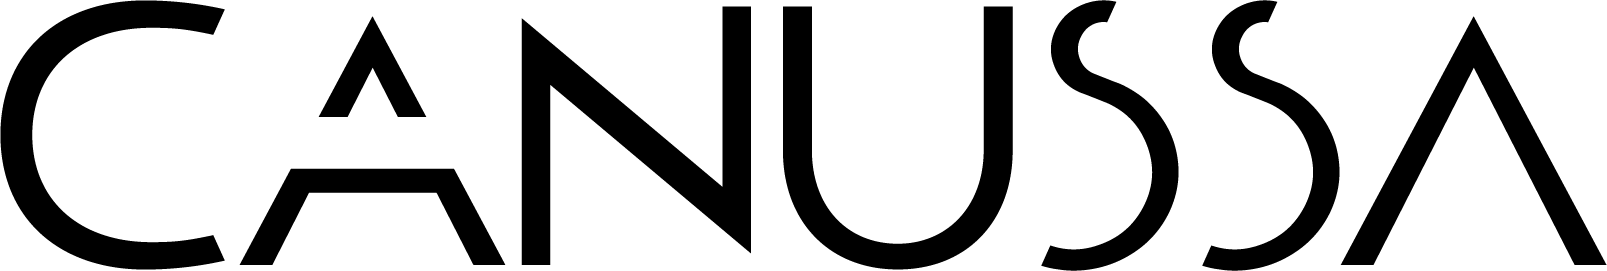 canussa logo